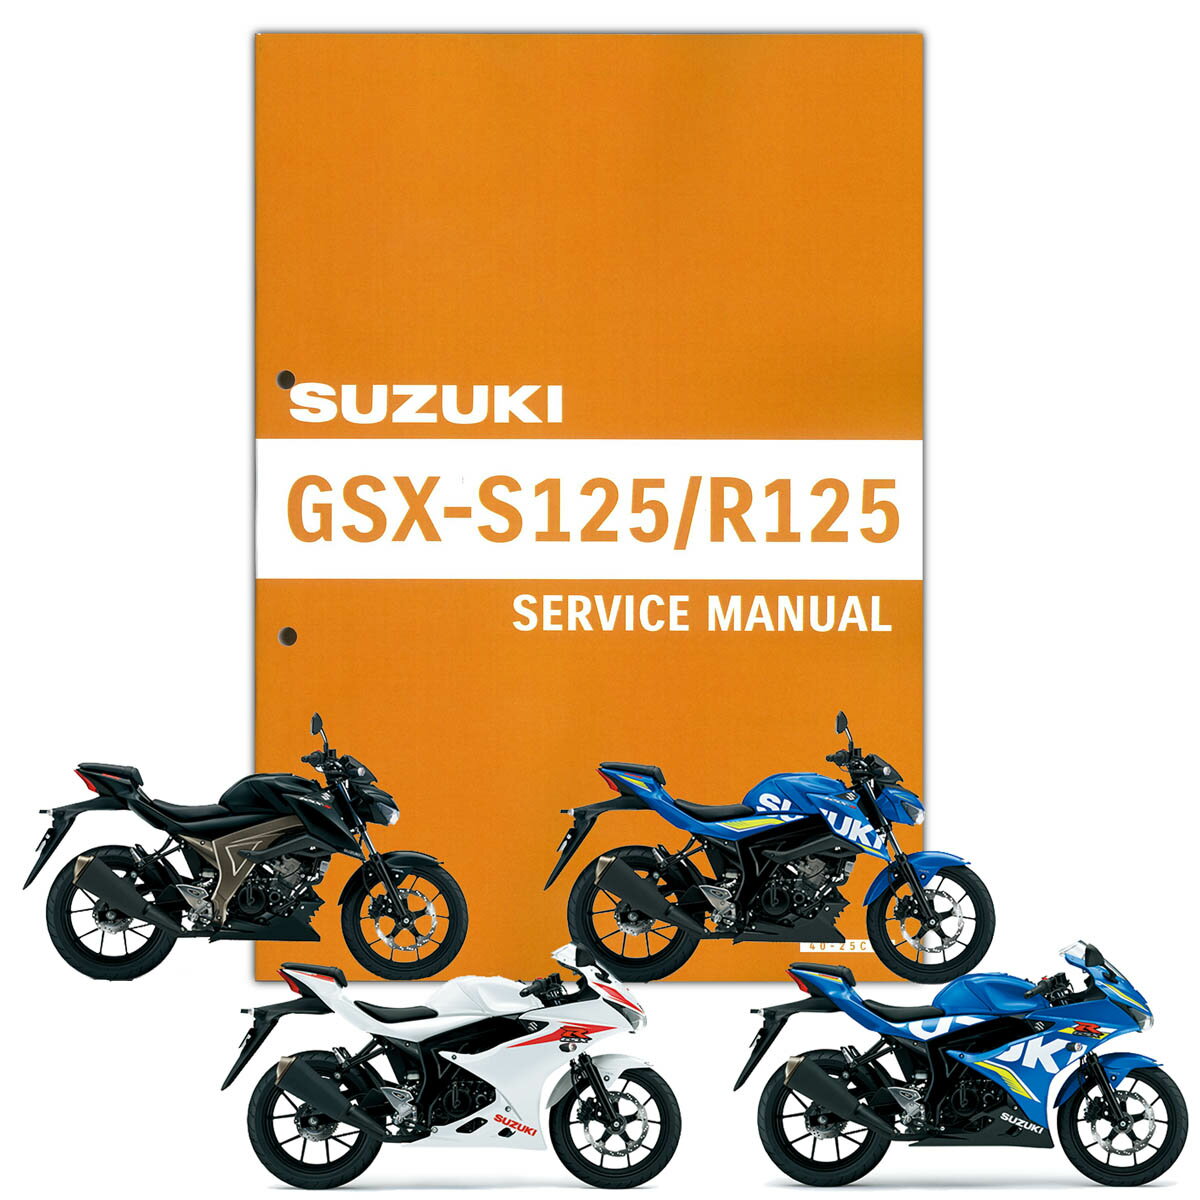 SUZUKI GSX-S125/GSX-R125 サービスマニュアル 99600-31753